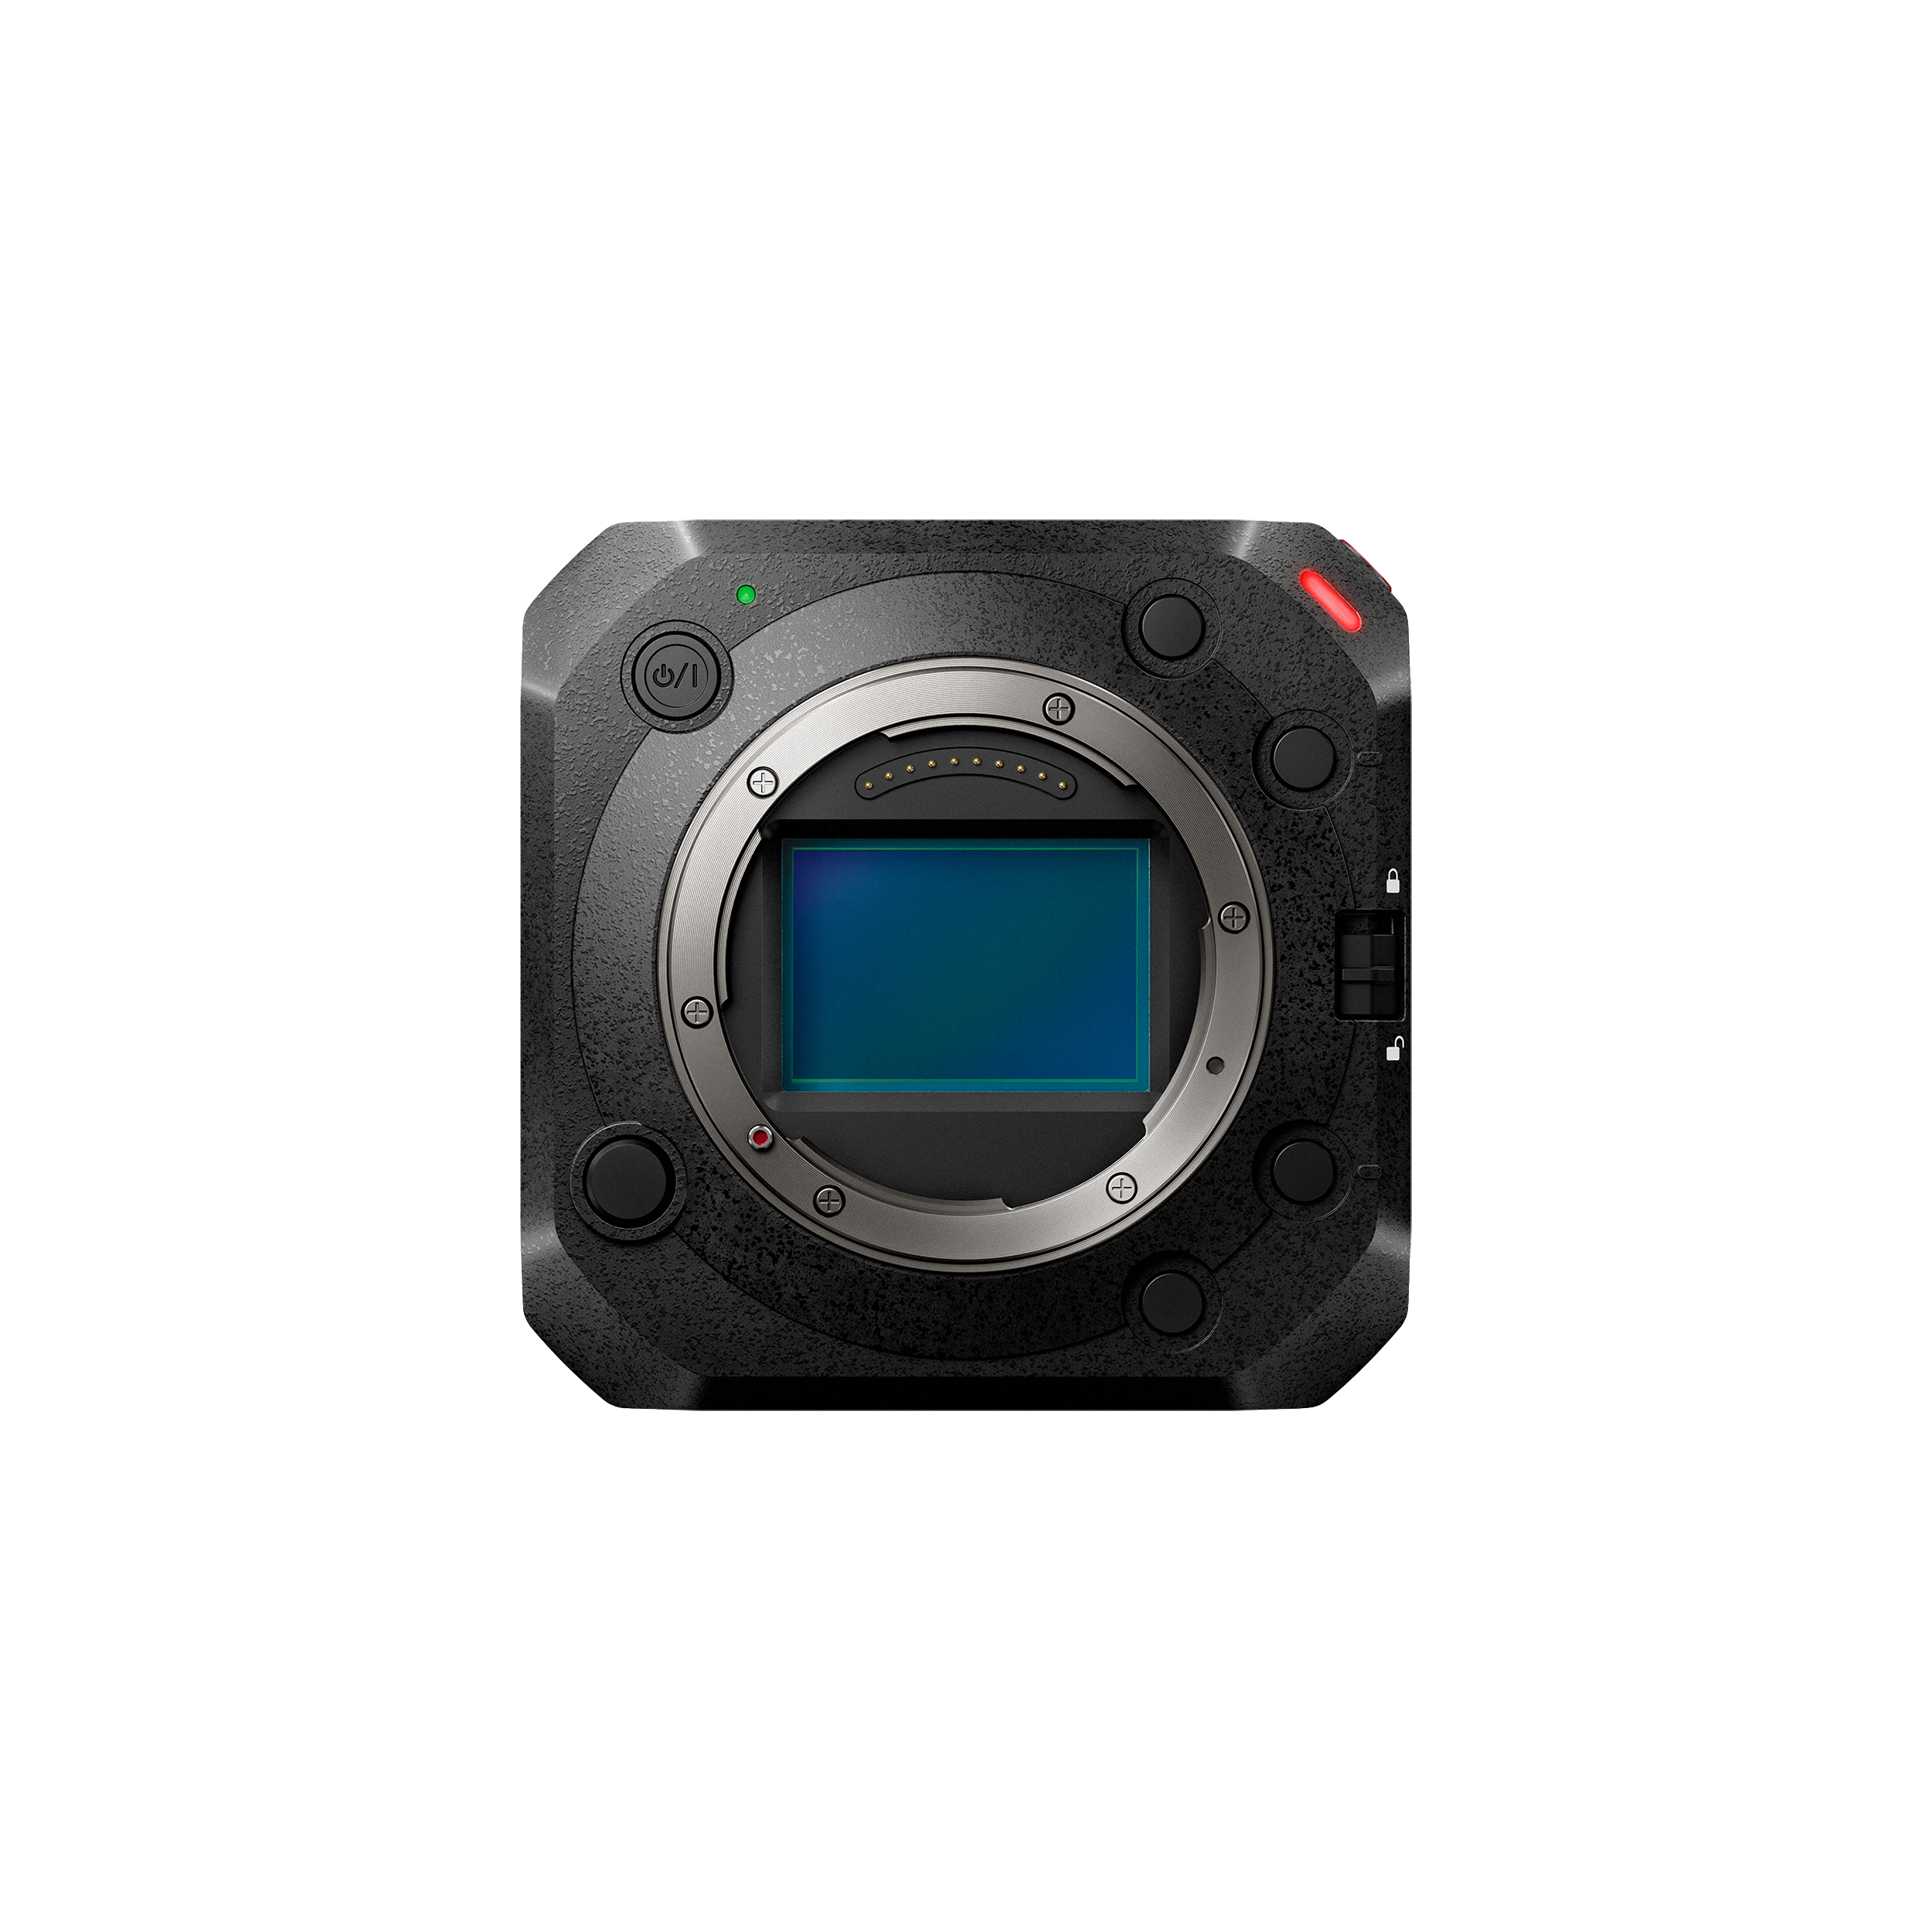 Panasonic Lumix BS1h Caméra à cadre complet